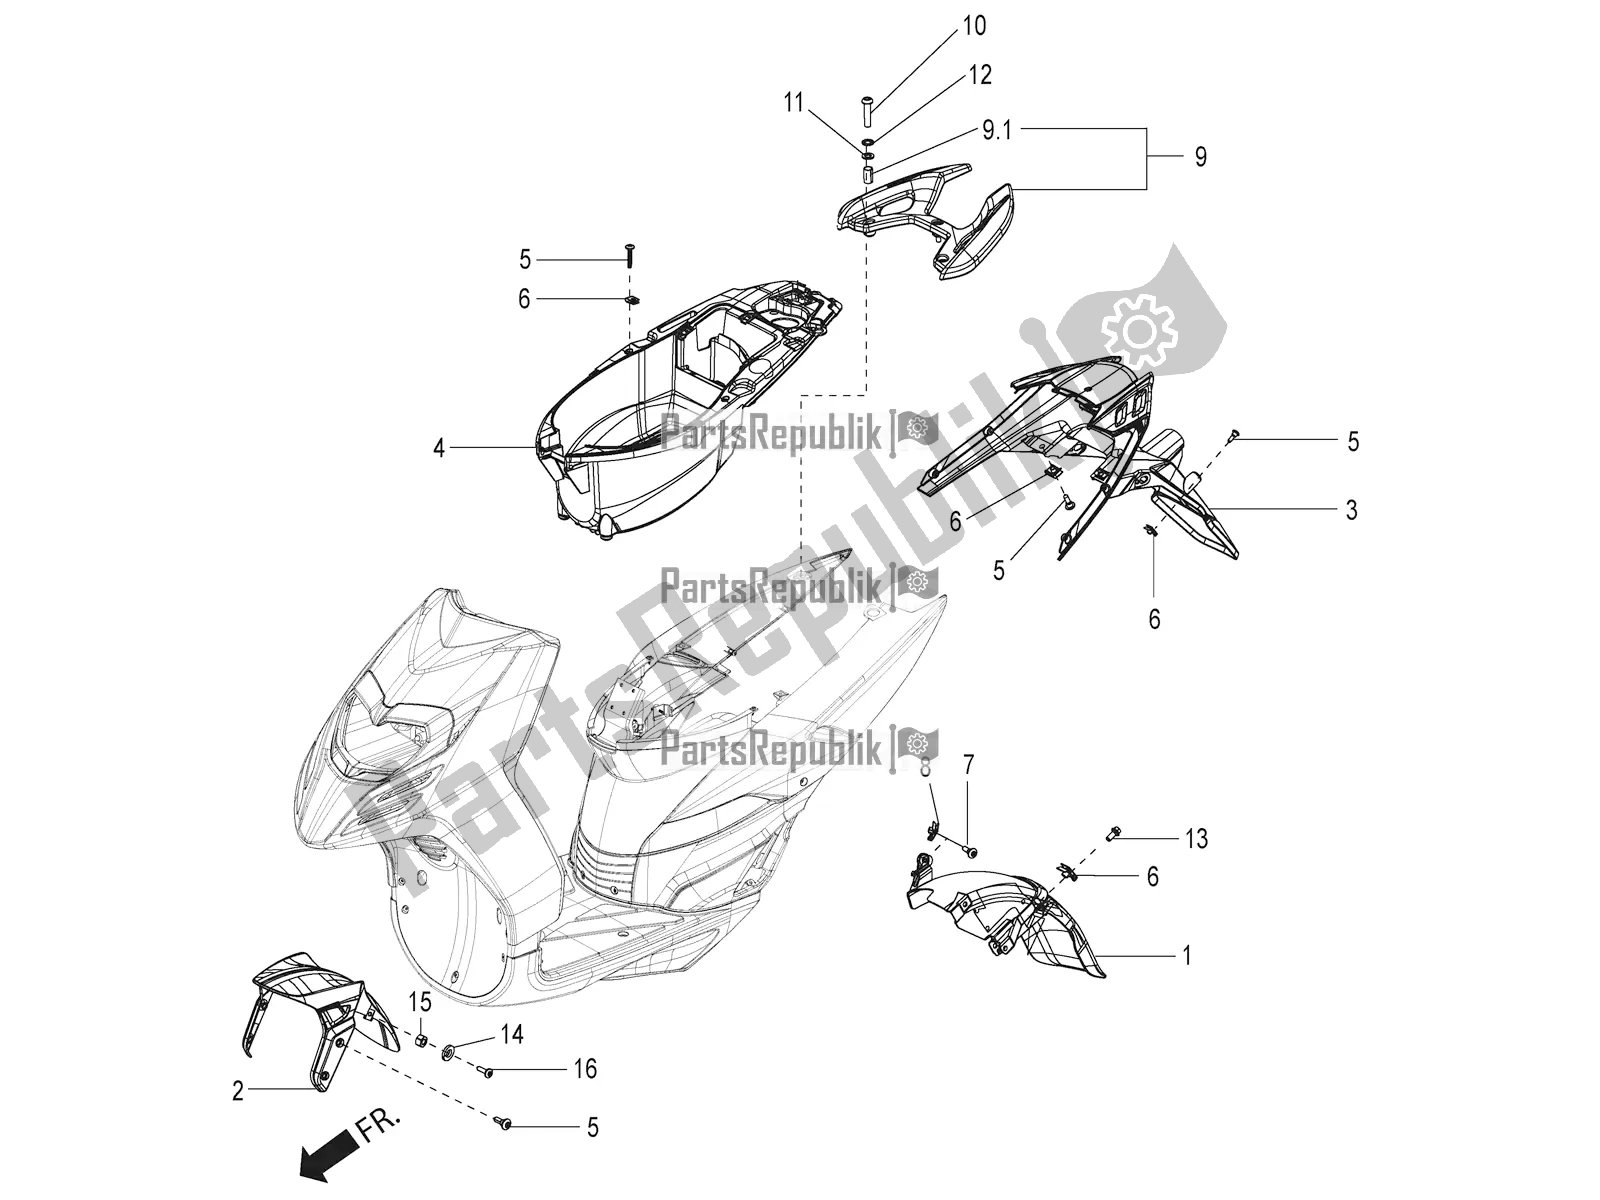 Toutes les pièces pour le Mudguard And Helmet Case du Aprilia SR 125 Storm TT Bsiv Latam 2021